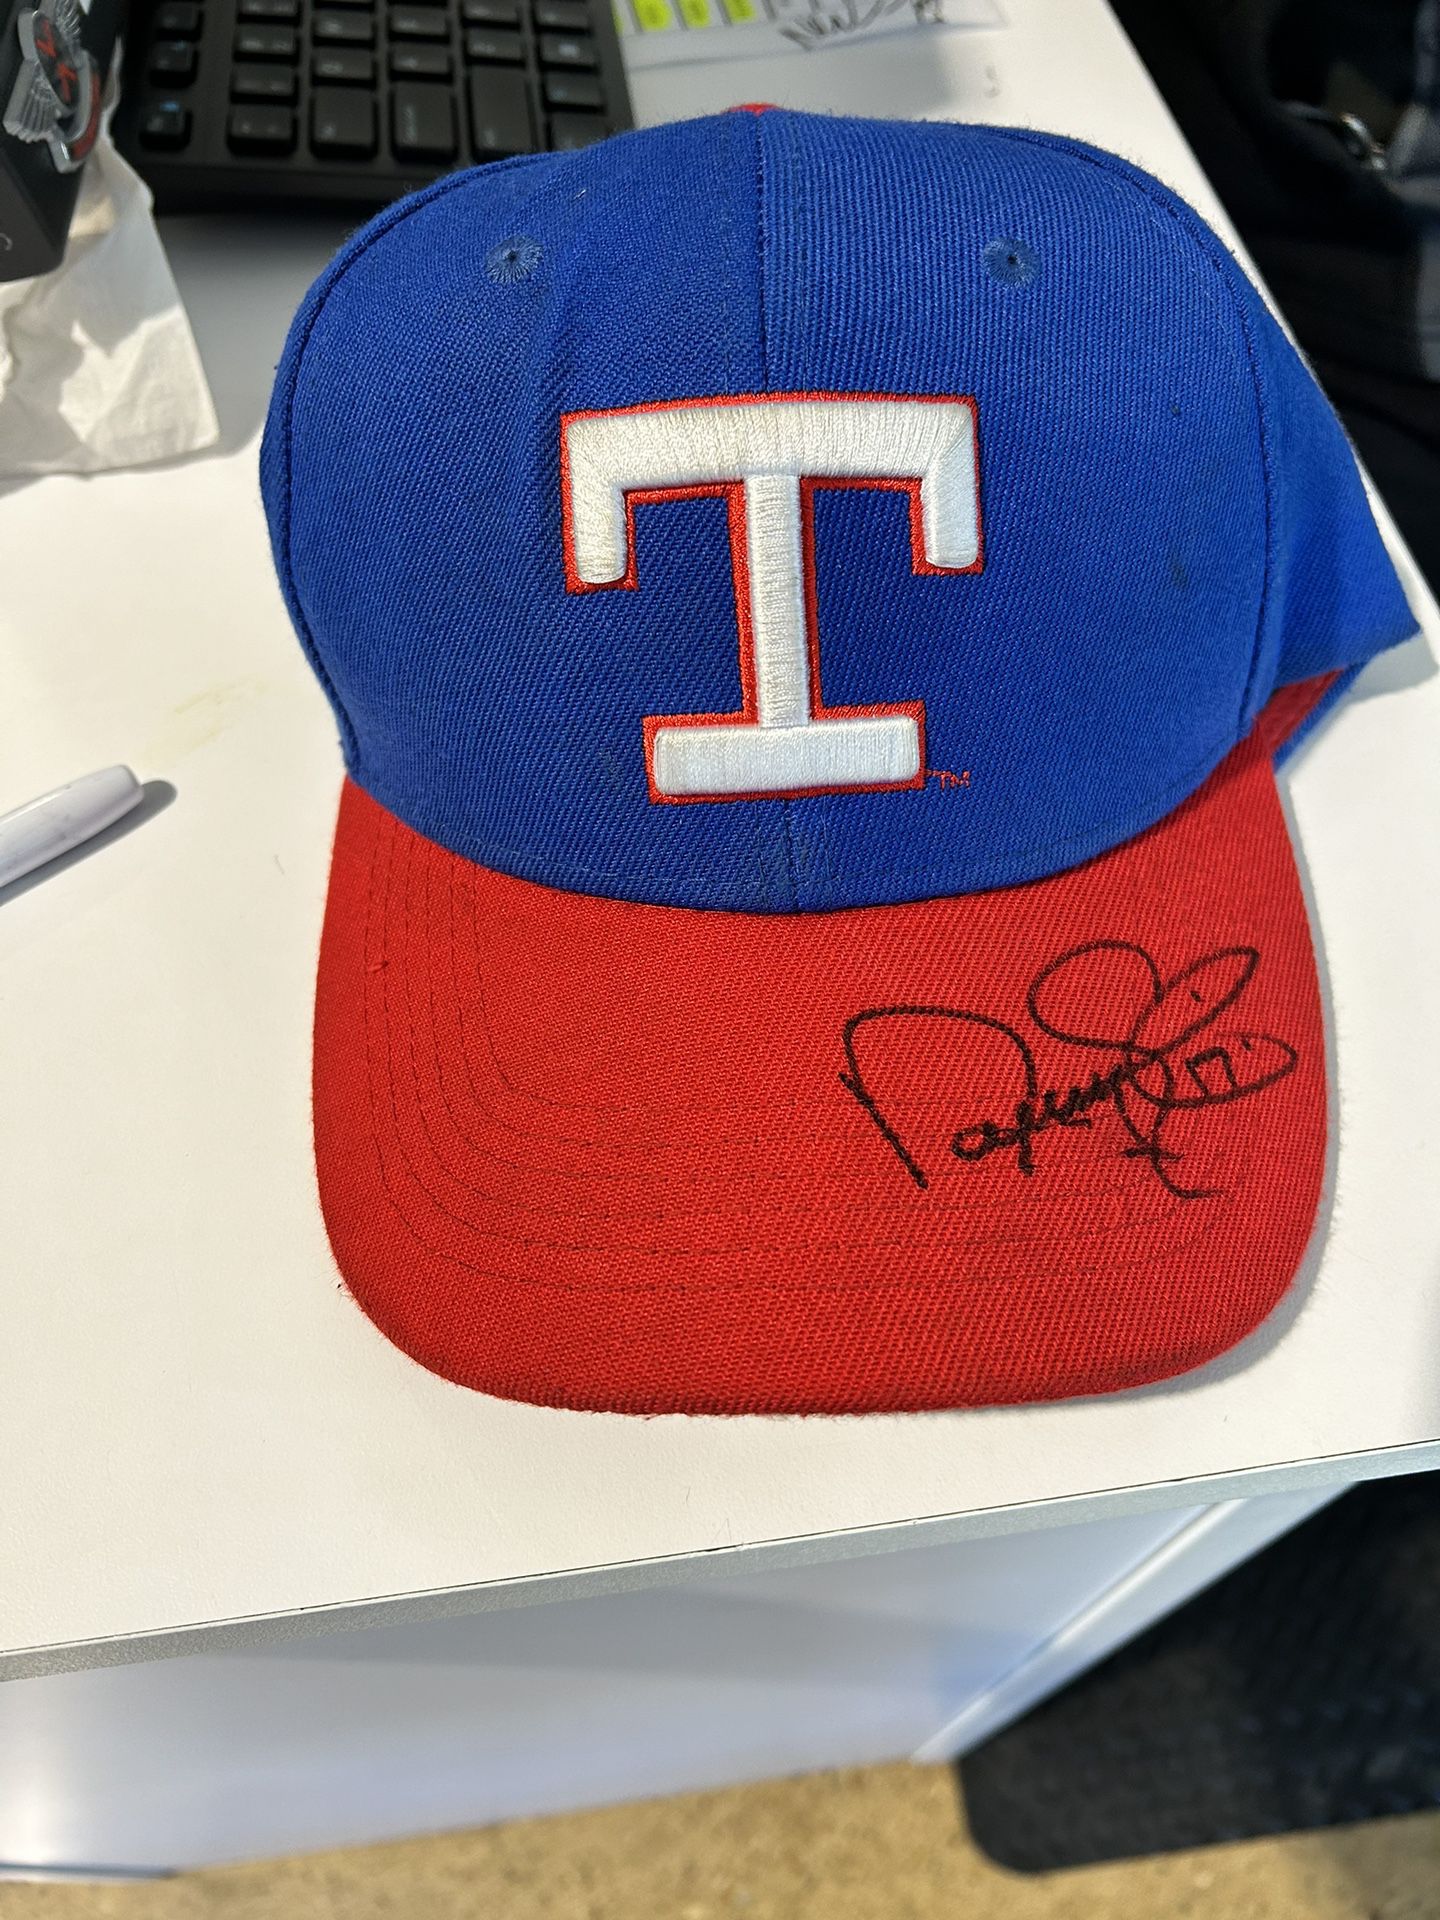 Rangers Autographed Hat